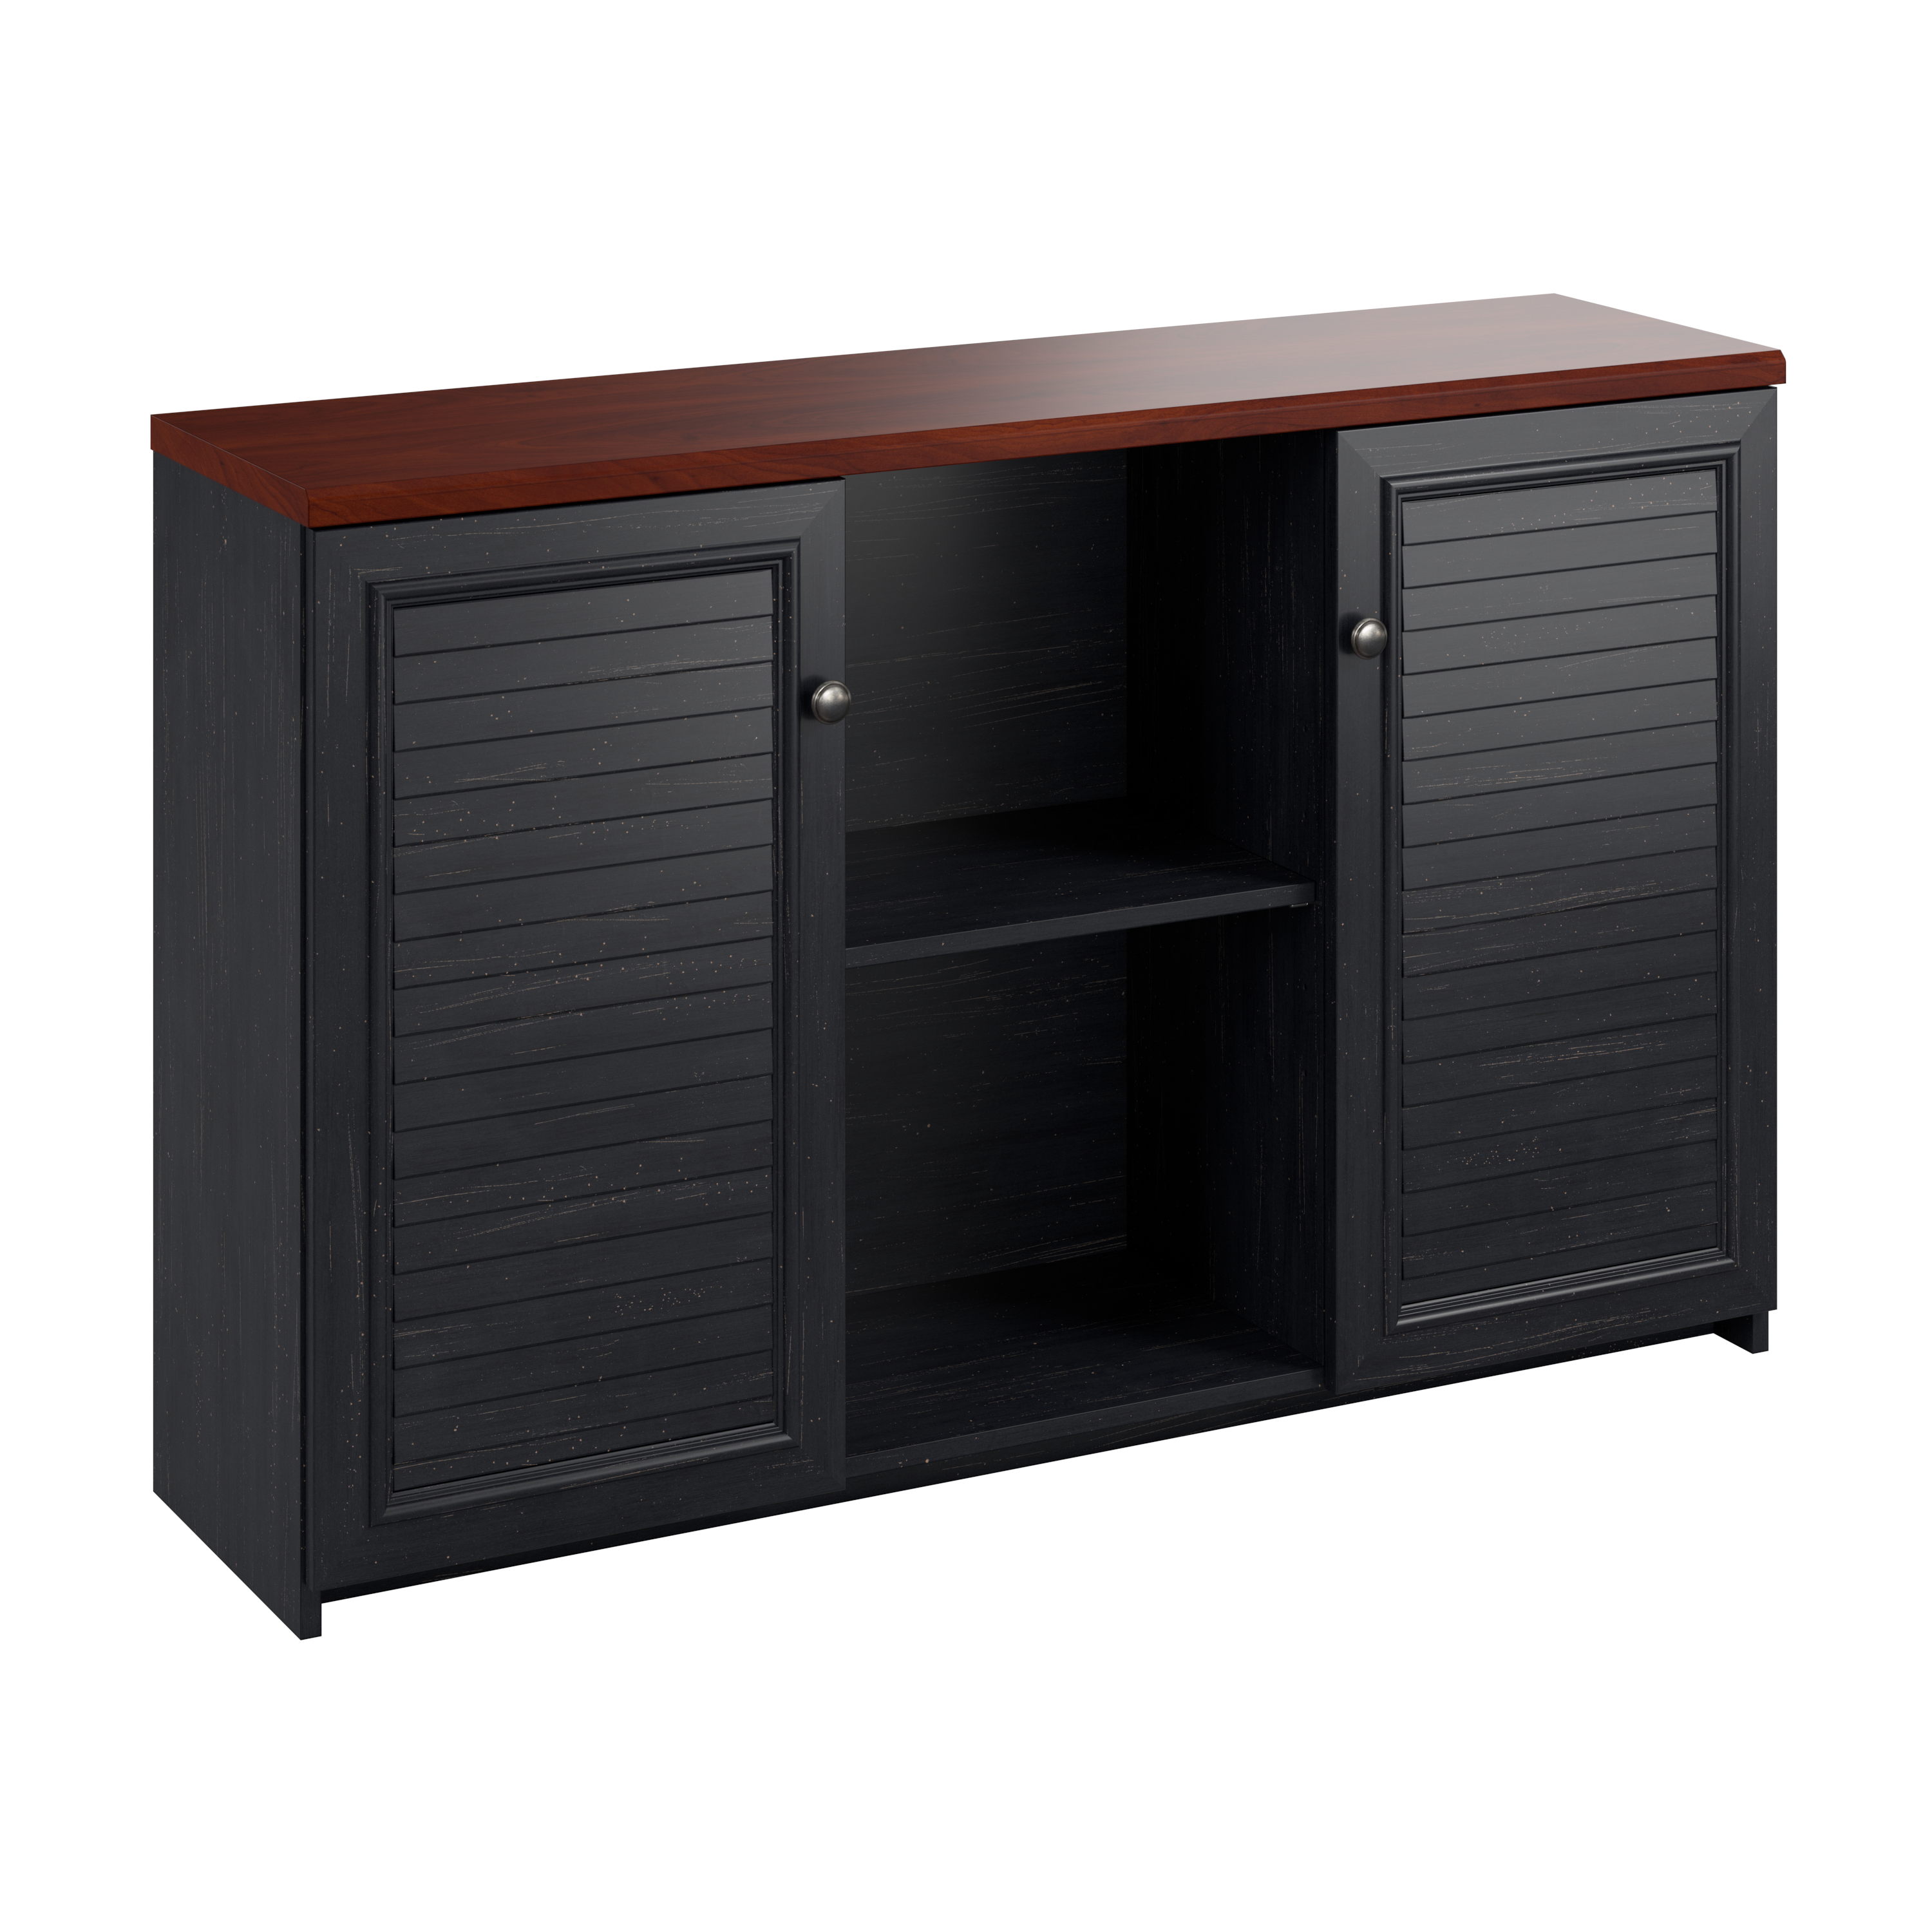 Shop Bush Furniture Fairview Accent Cabinet with Doors 02 WC53948-03 #color_antique black/hansen cherry